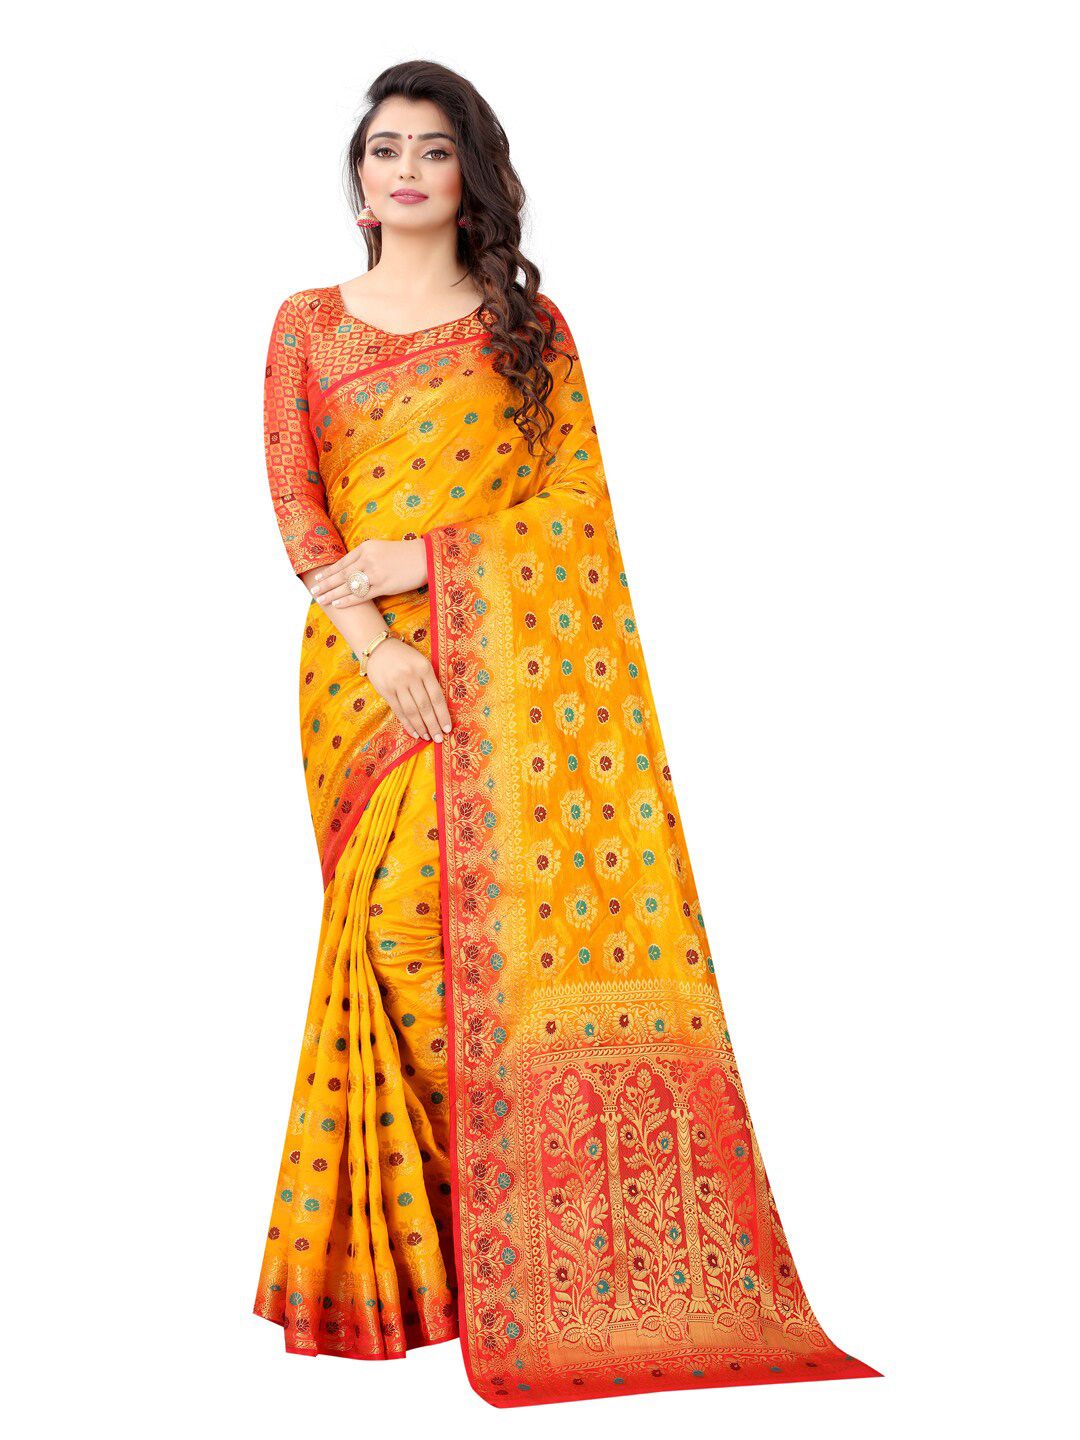 PERFECT WEAR Yellow & Red Floral Zari Silk Cotton Banarasi Saree Price in India